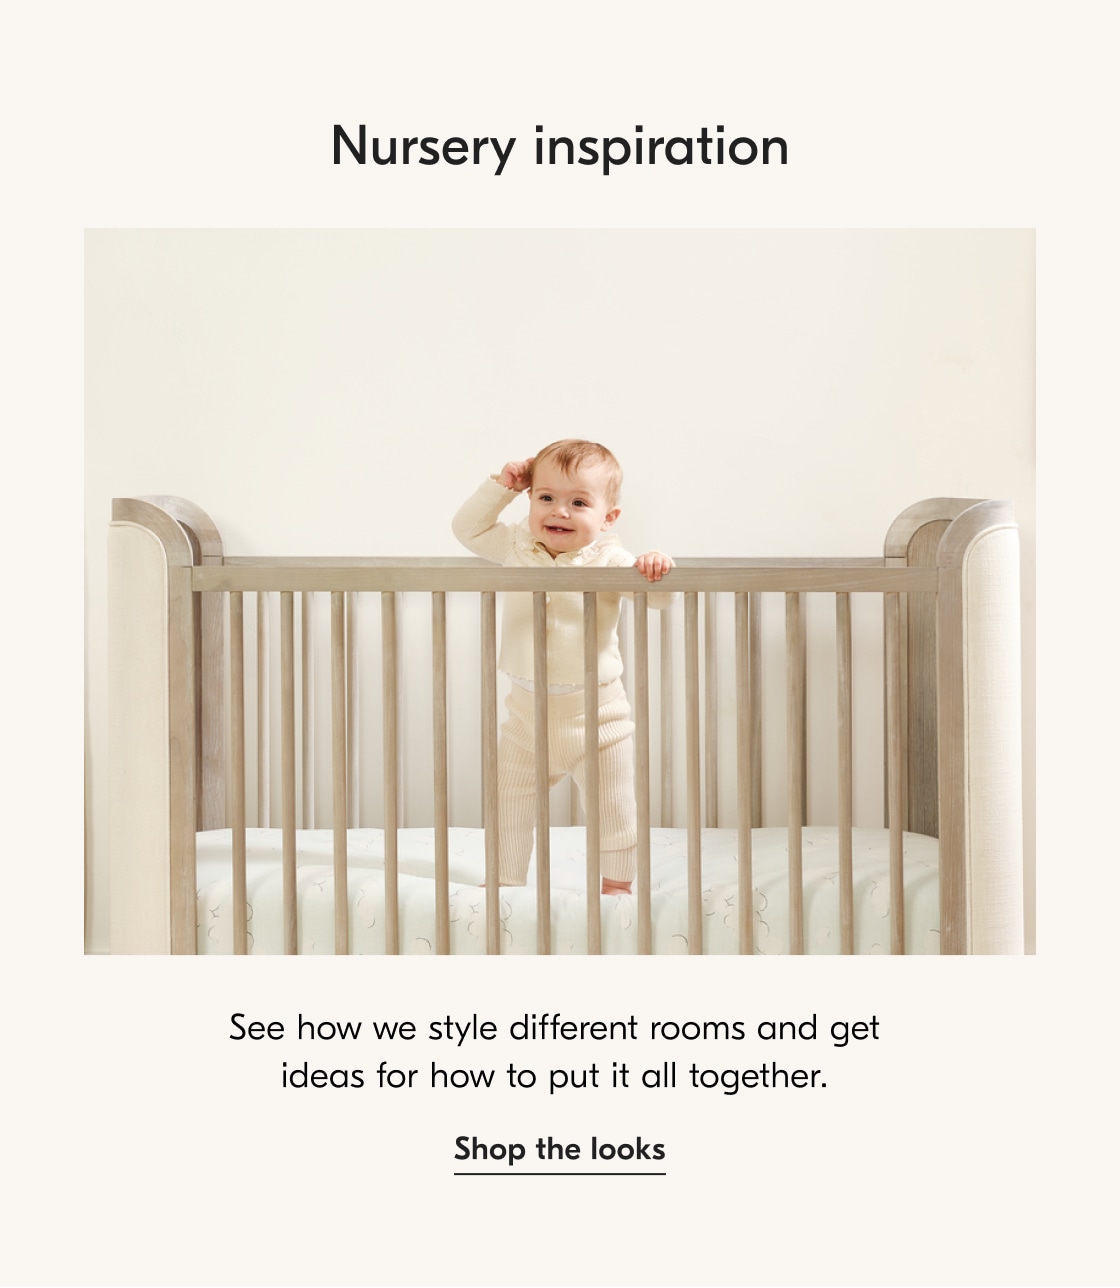 Nursery inspiration